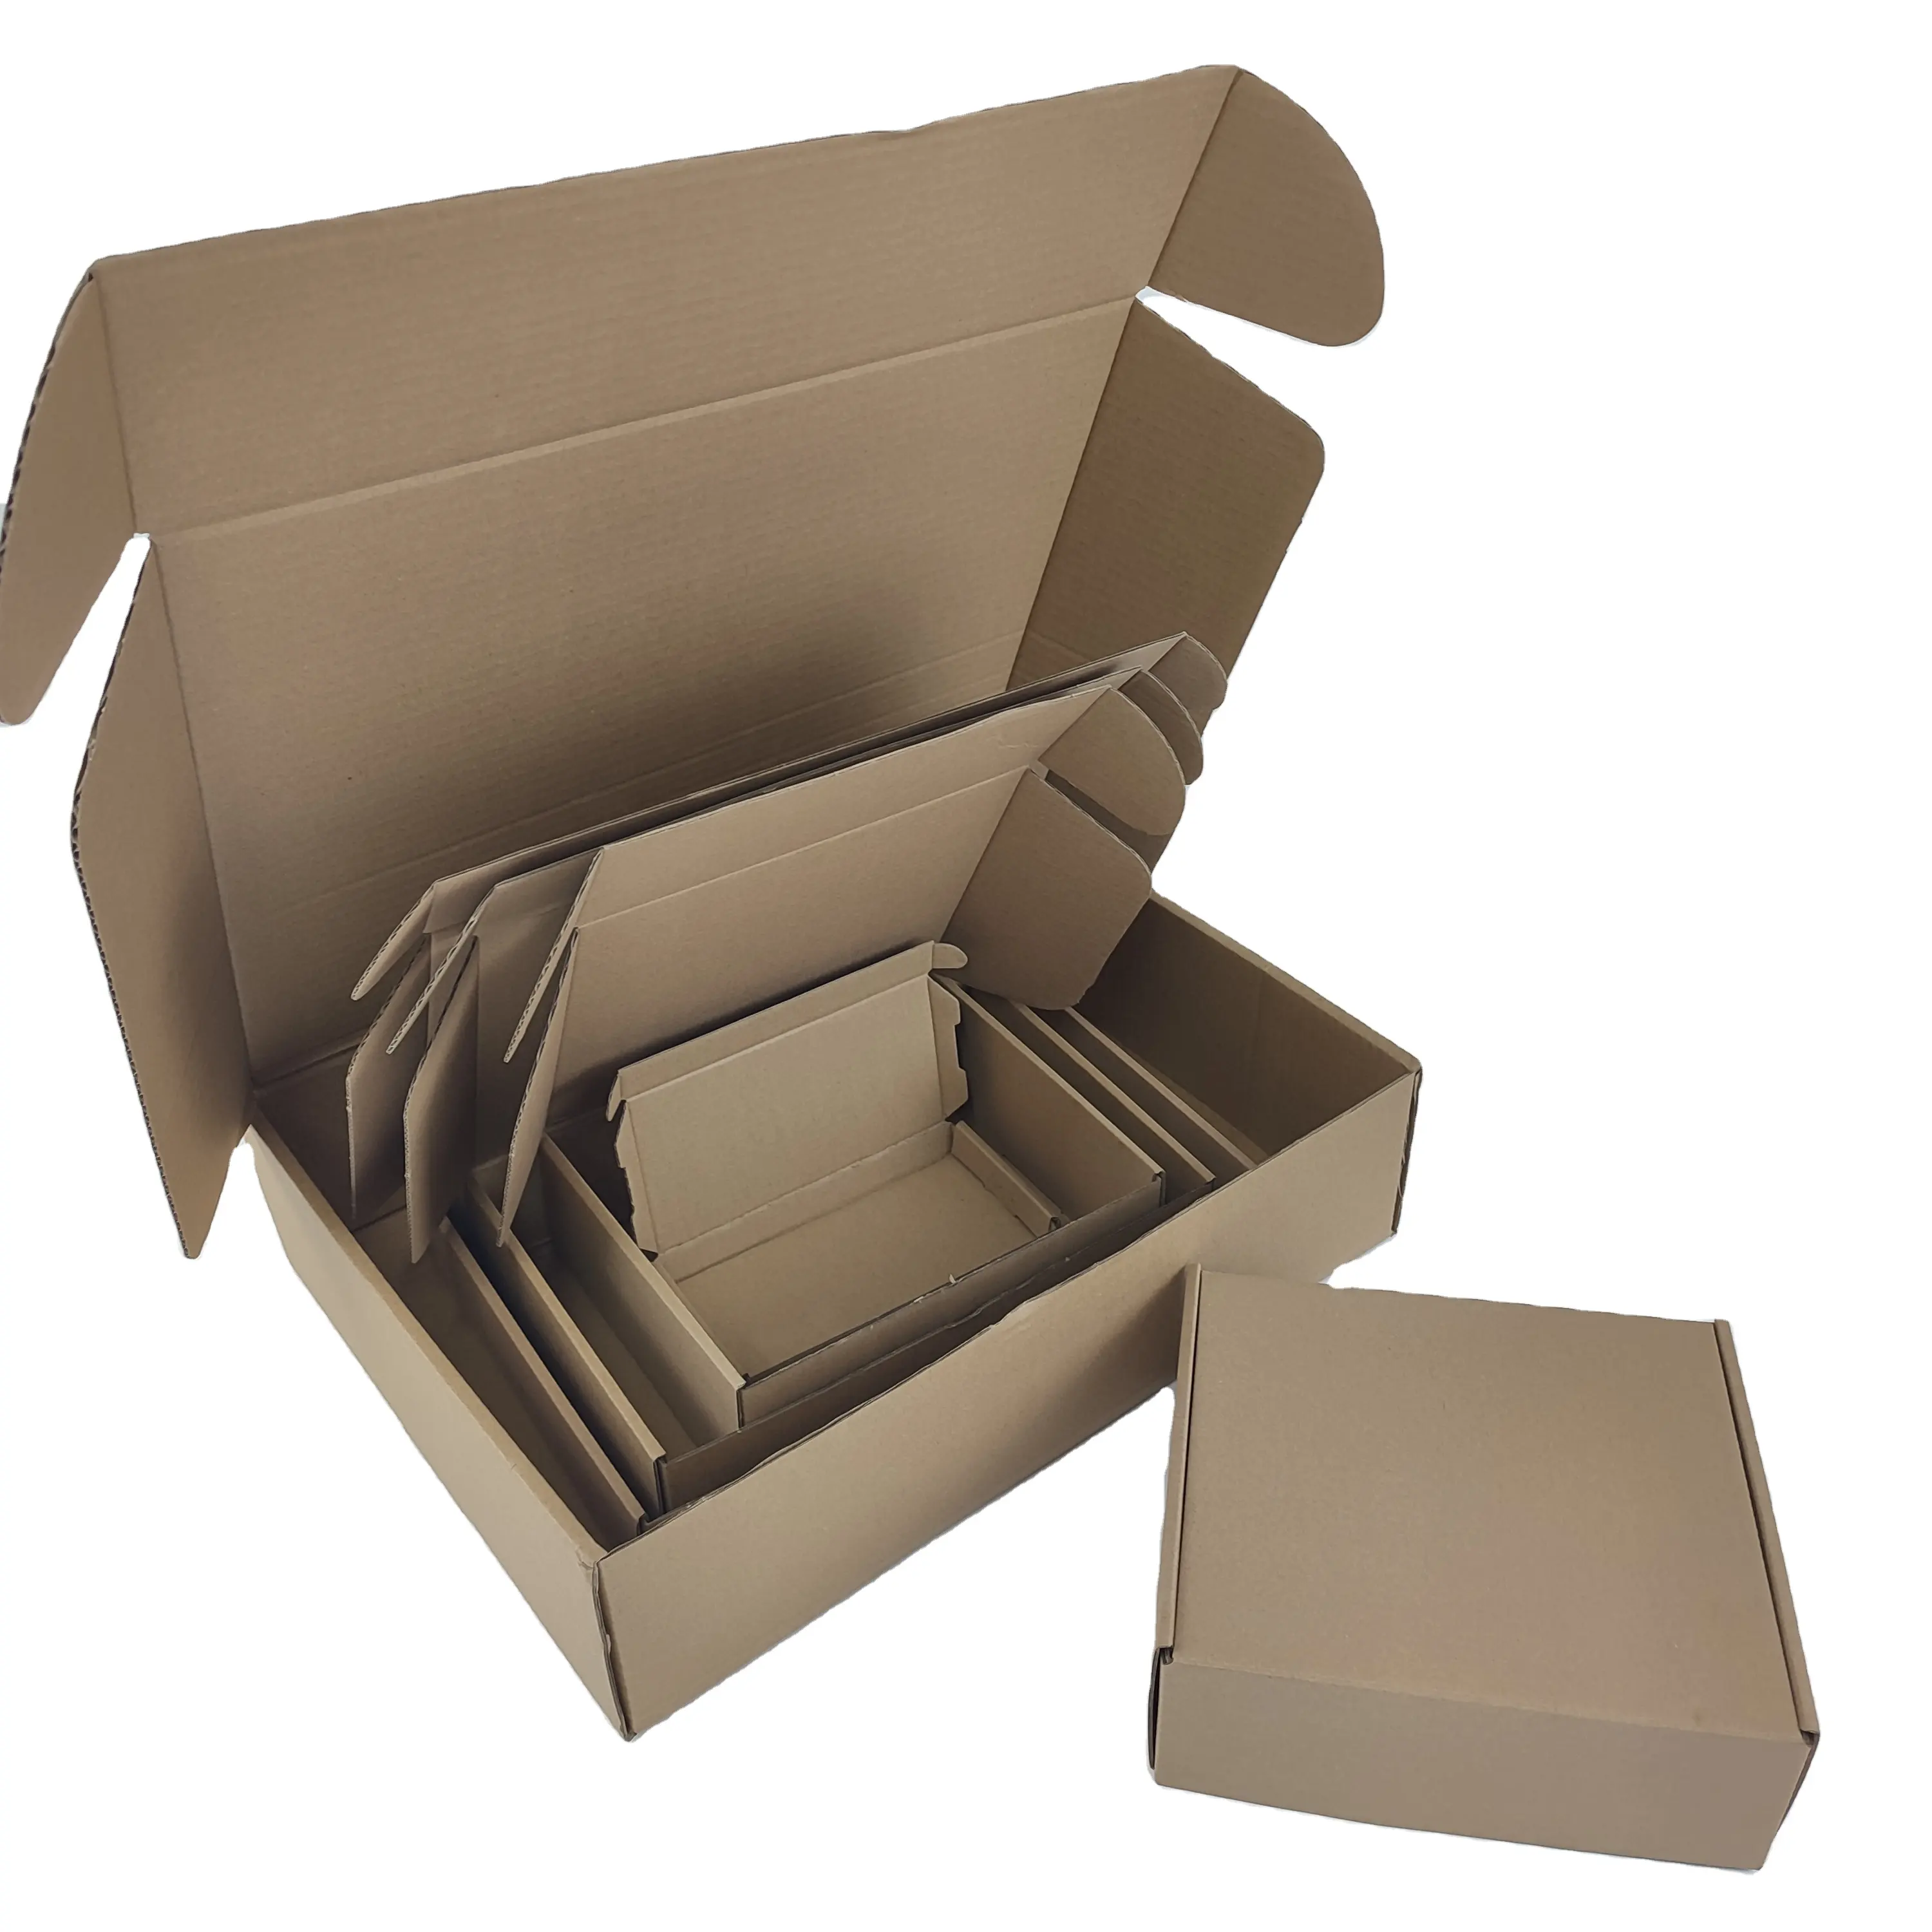 Venda quente em estoque logotipo personalizado presente papelão caixas de transporte mailer caixa roupas sapatos embalagens onduladas caixas